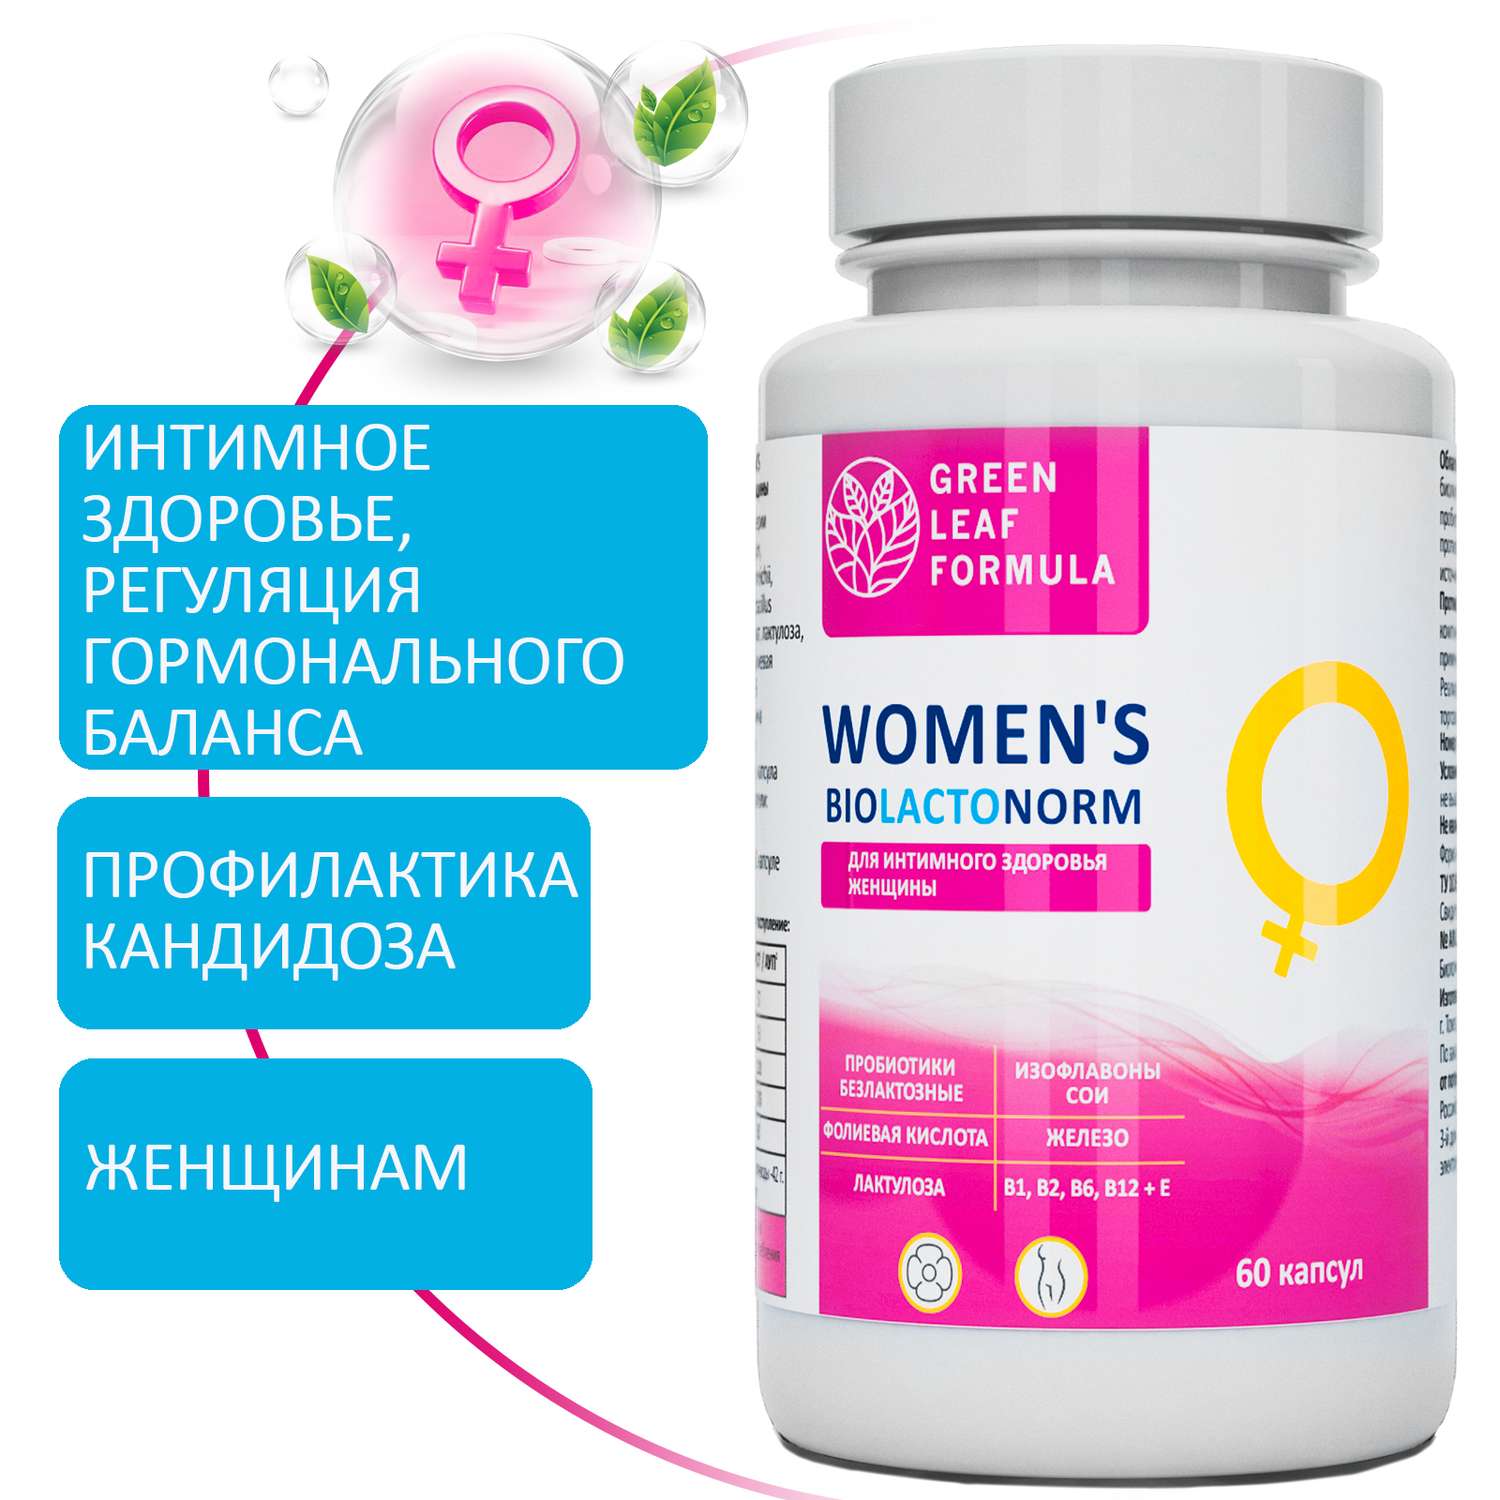 Пробиотики для женщин Green Leaf Formula для интимного здоровья фитоэстрогены от климакса железо витамины - фото 1